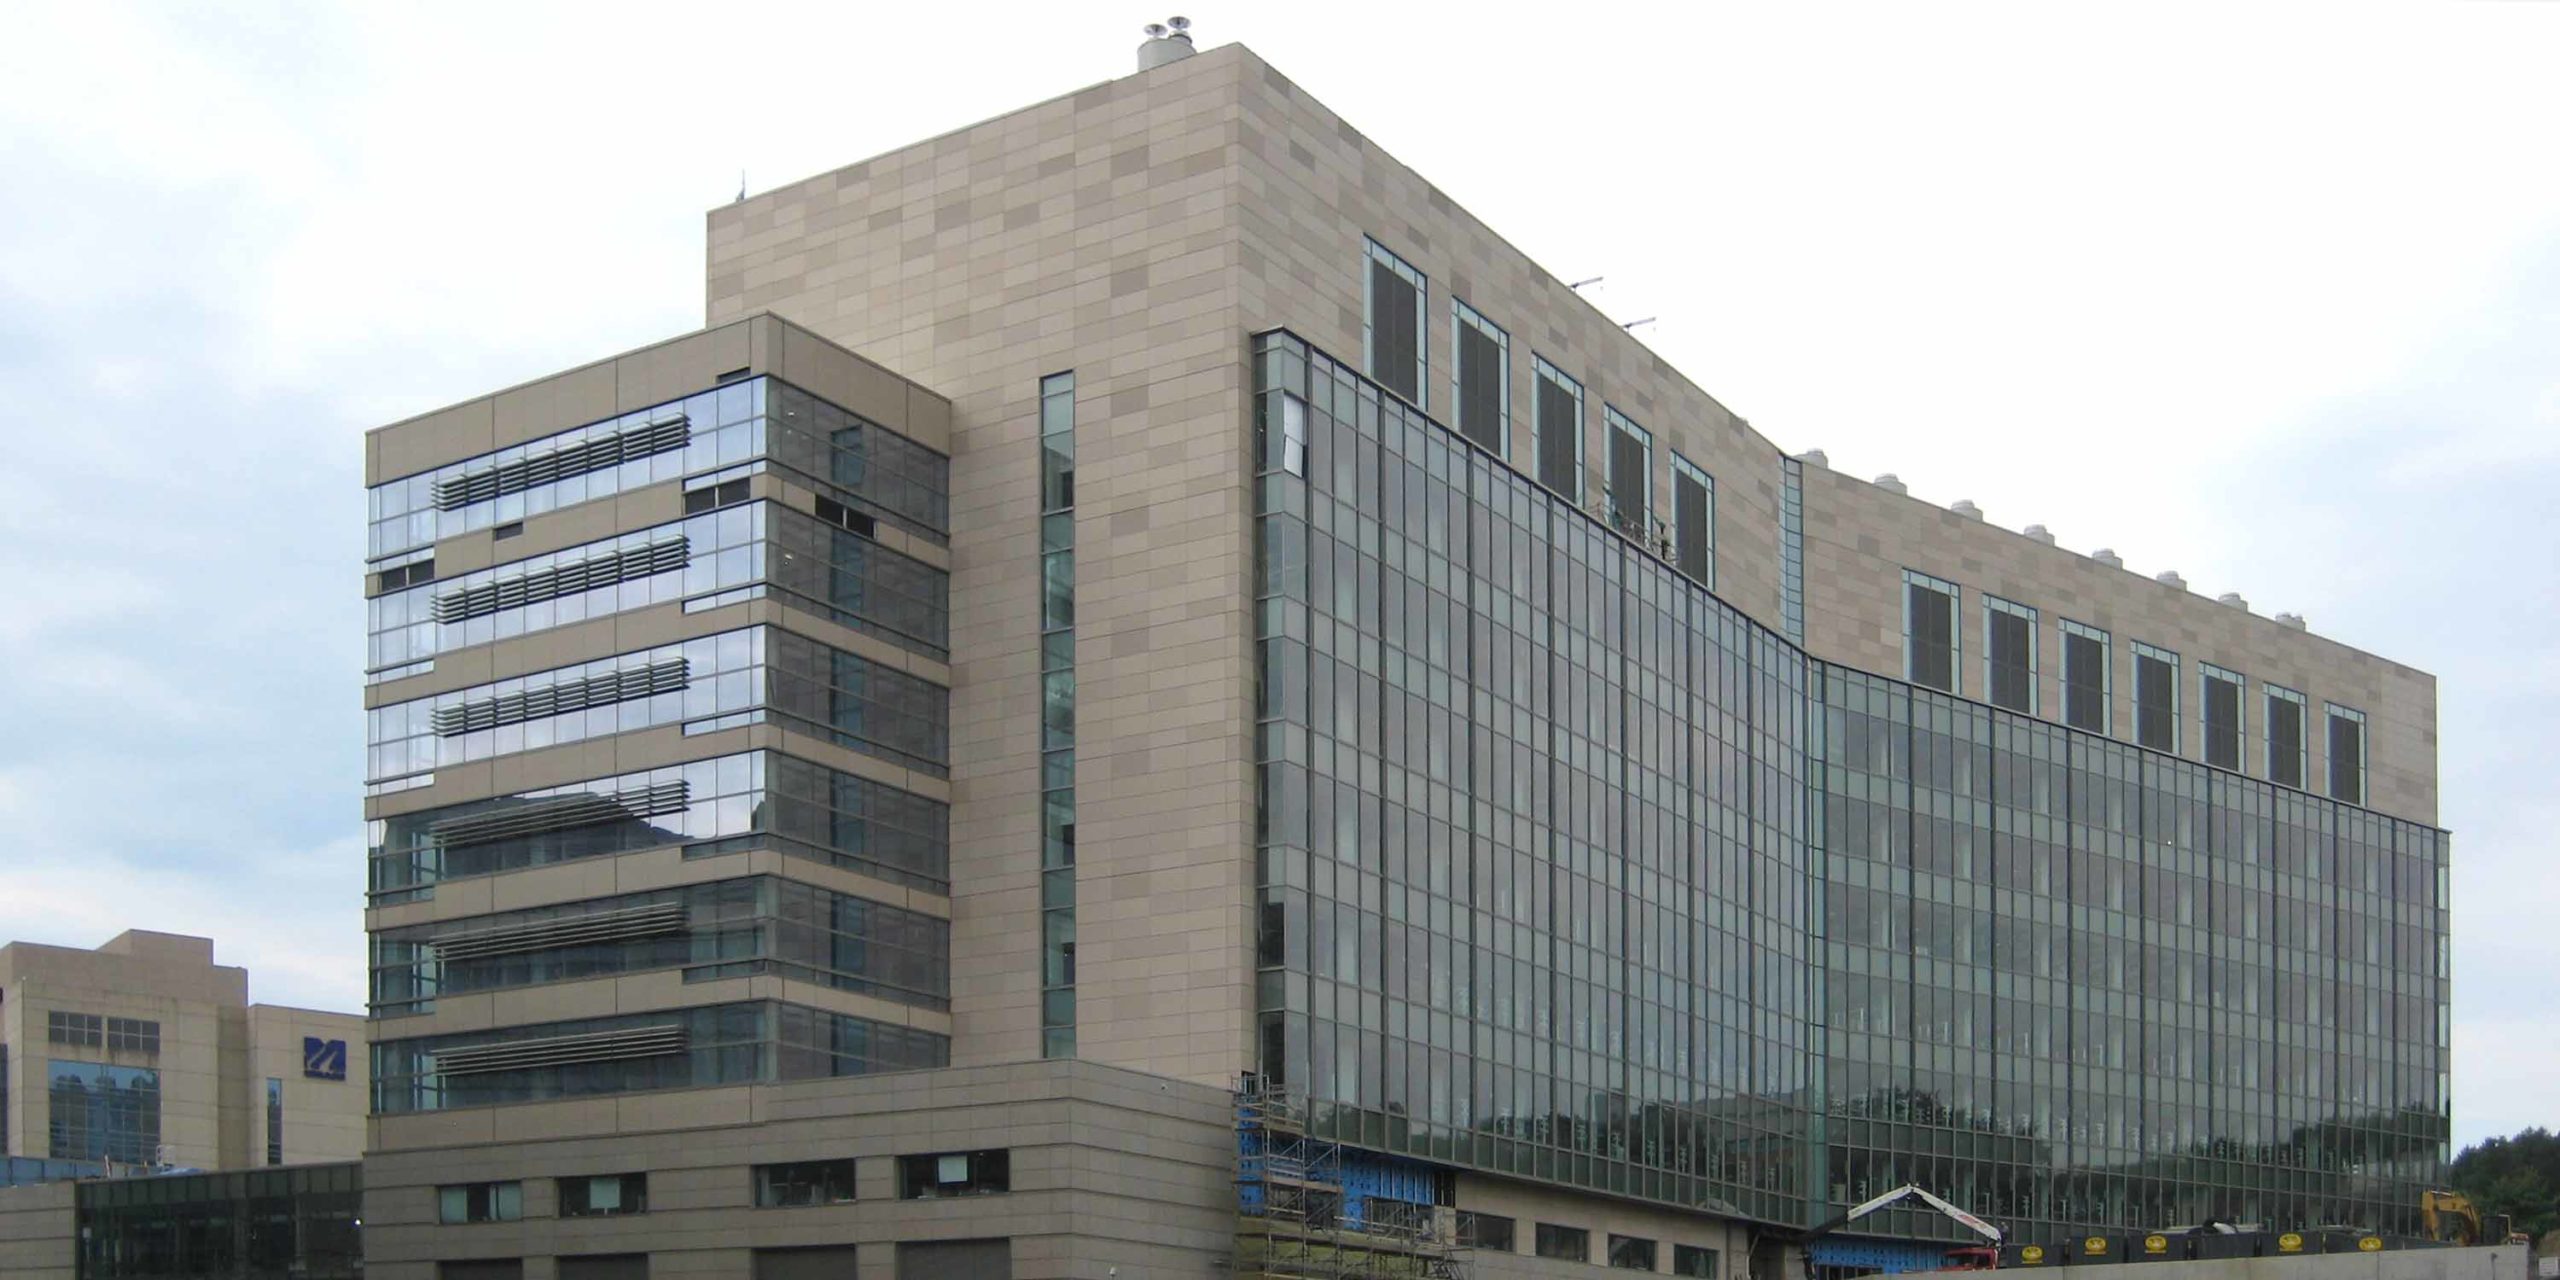 University of Massachusetts Medical School: Albert Sherman Center header image #2